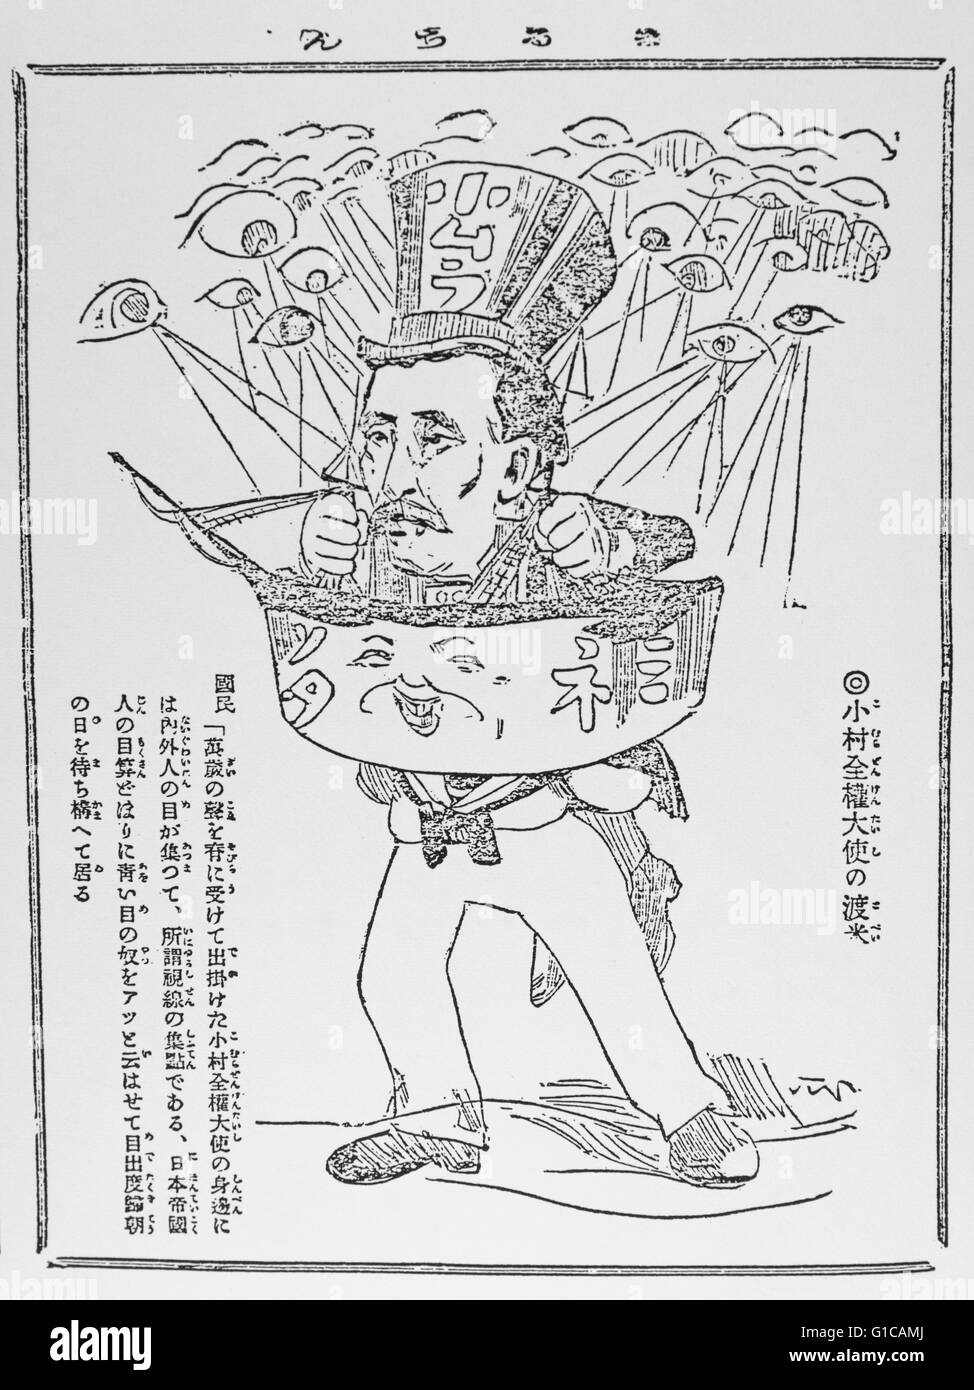 Karikatur des russisch-japanischen Krieges. Japanischen diplomatischen Münster fährt Jutaro Komura nach Portsmouth. 1905. Stockfoto